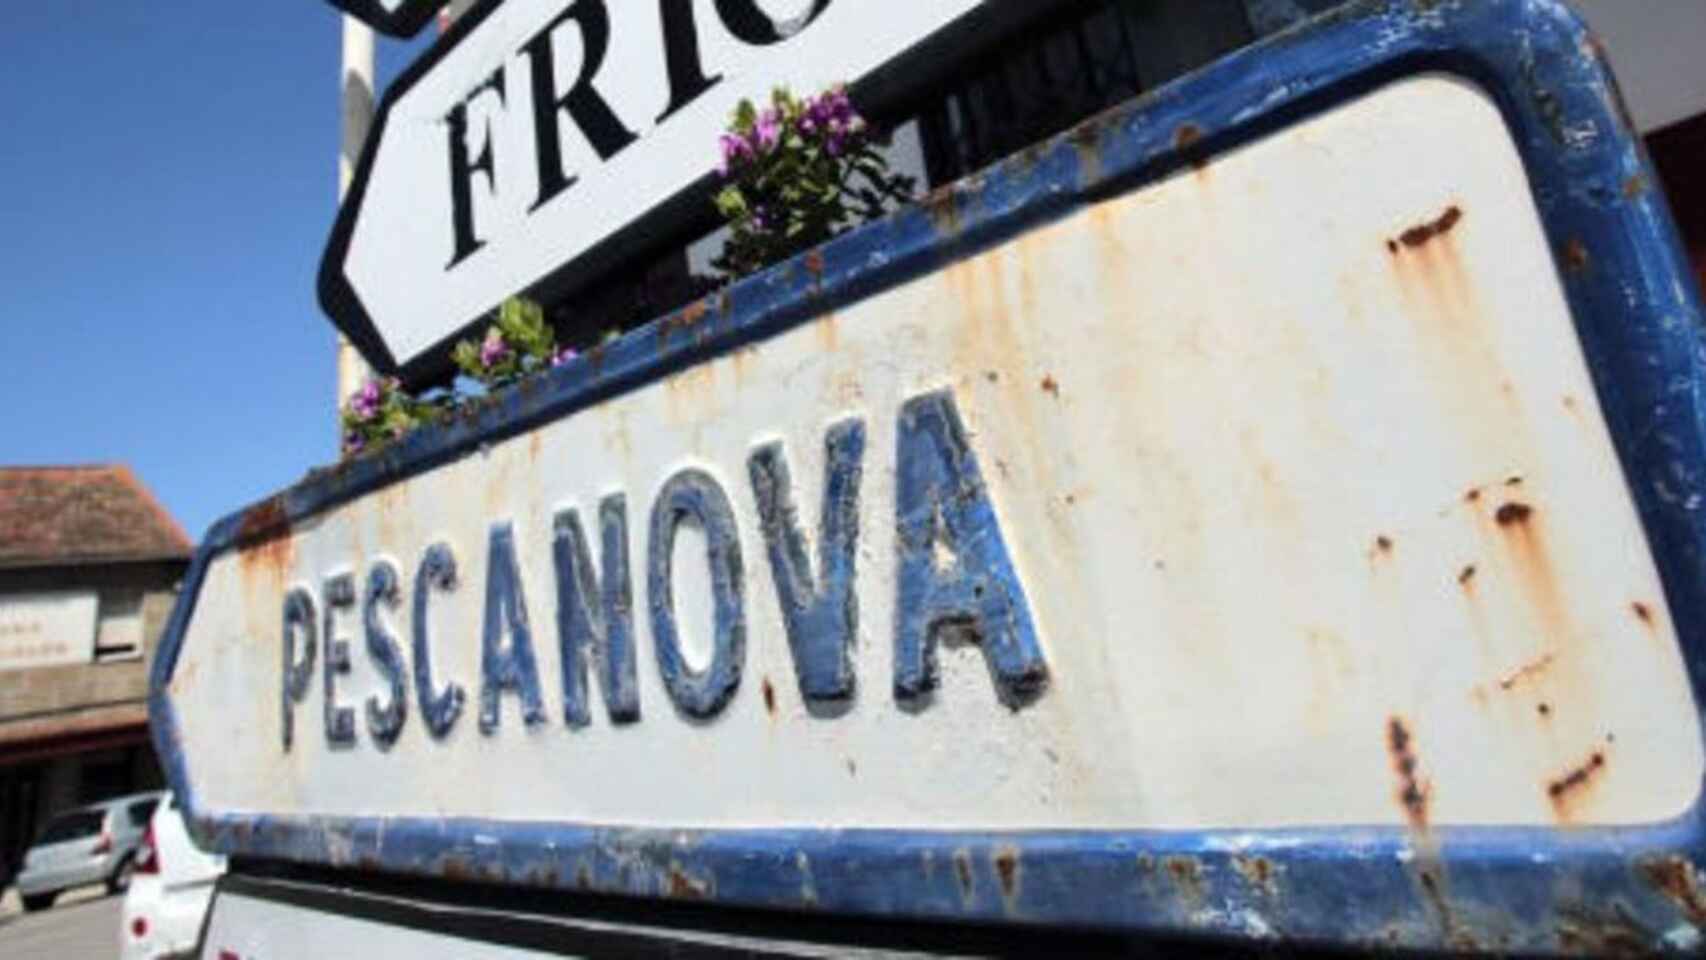 Pescanova es una de las marcas más conocidas que ha precticado recientemente la 'reduflación', según la OCU.